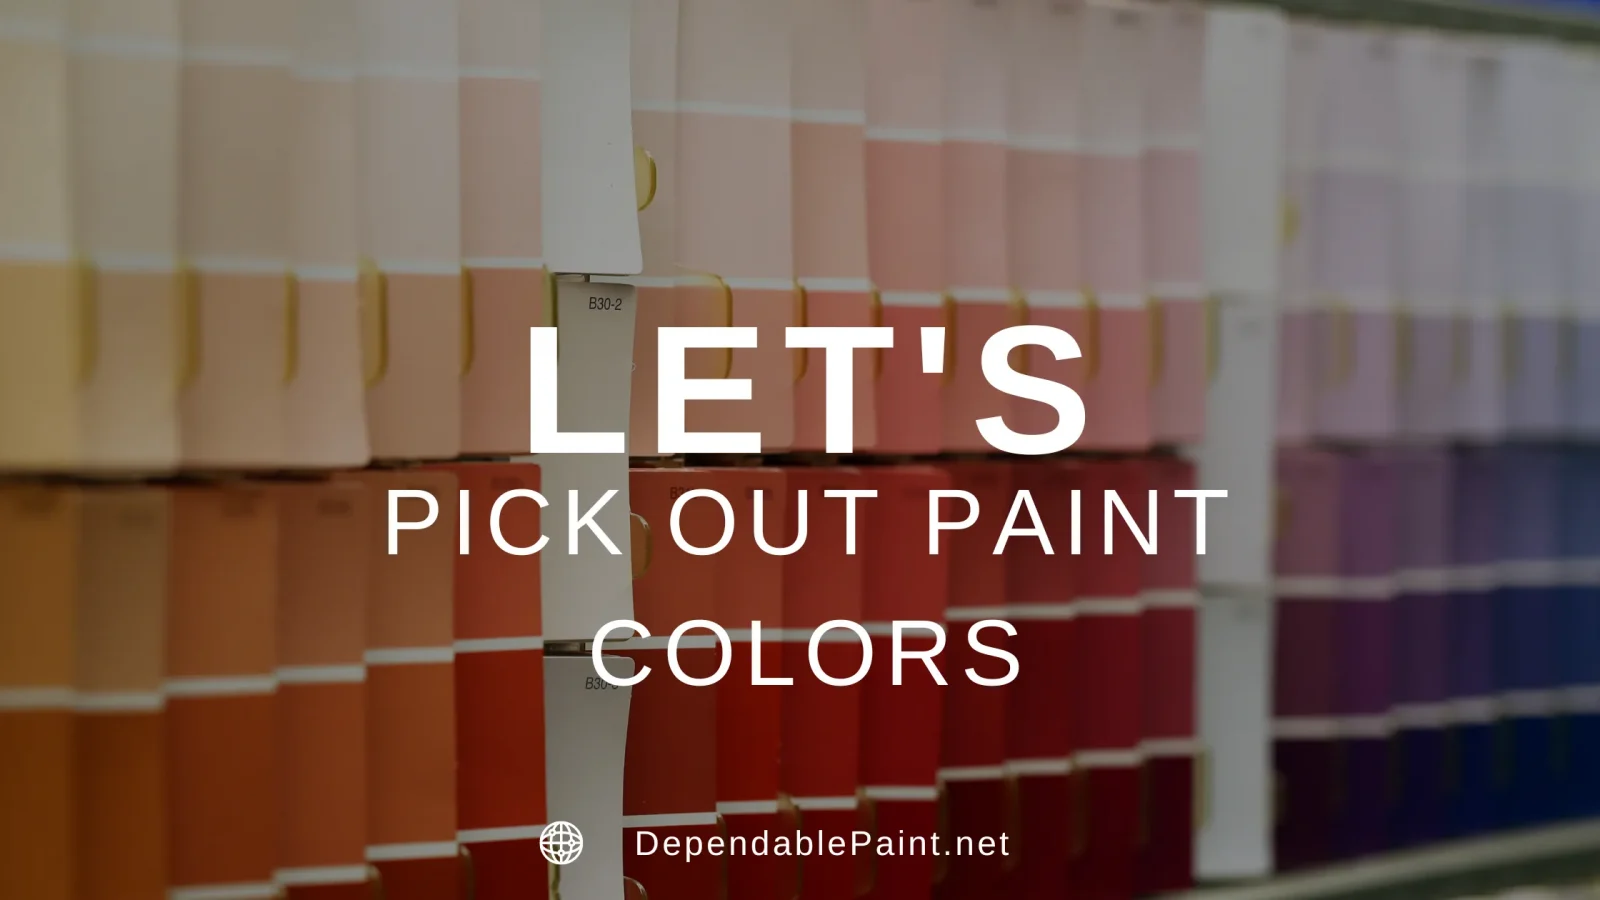 Pick out paint colors